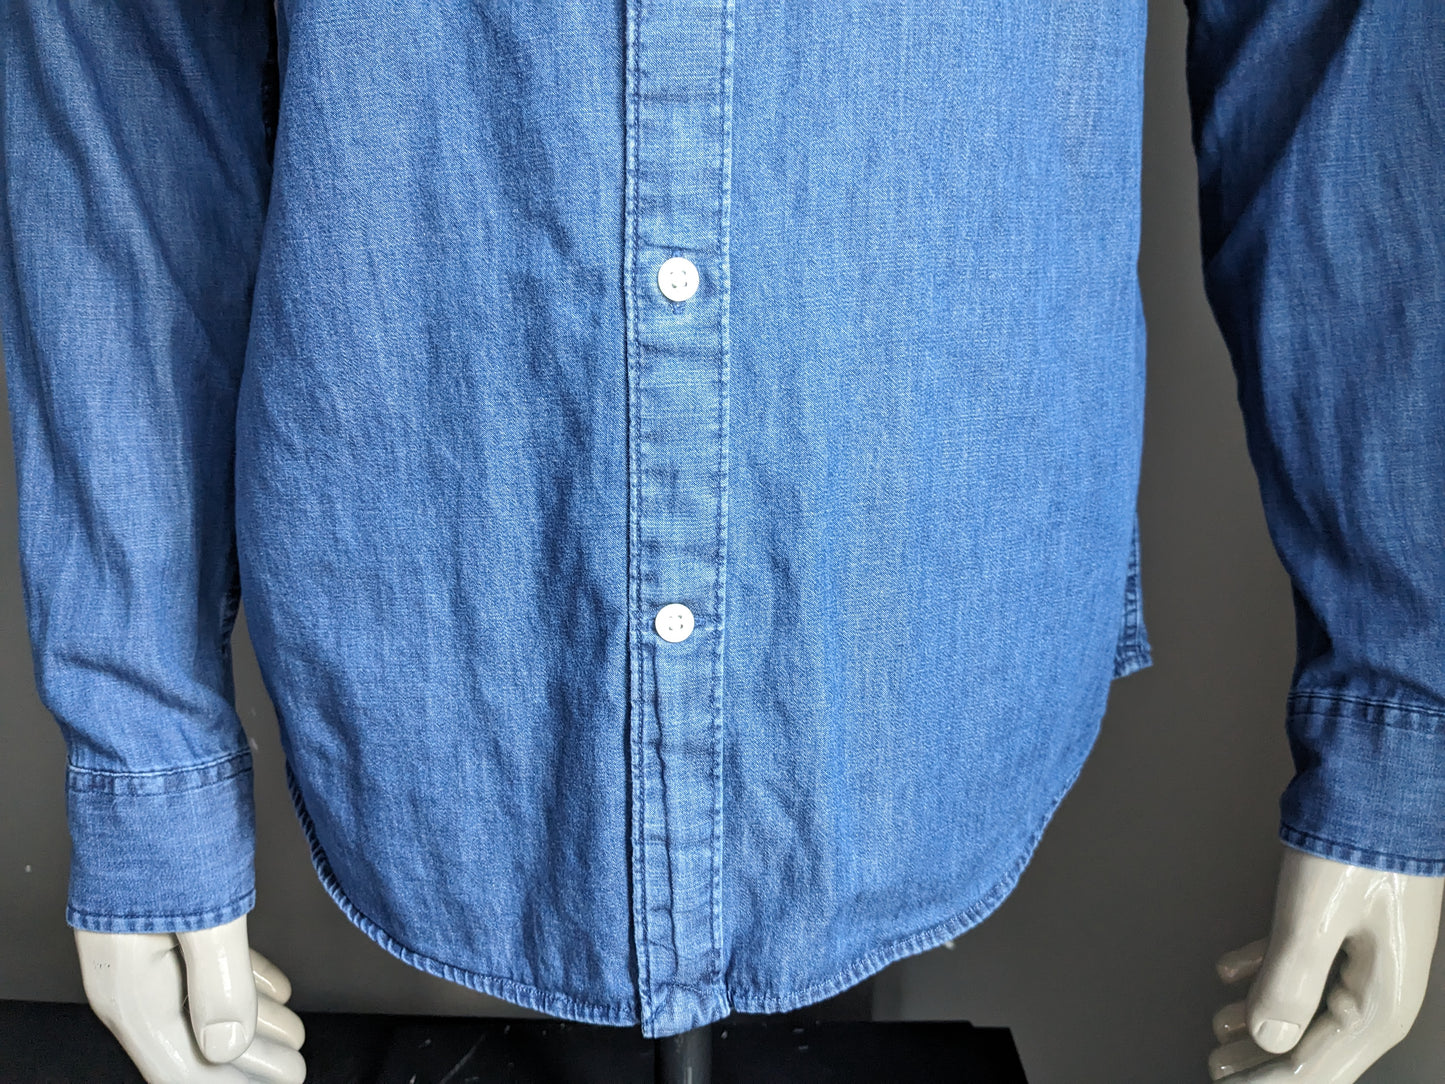 Camisa de aspecto Homme Jeans seleccionado. Color azul. Tamaño M. Ajuste regular.